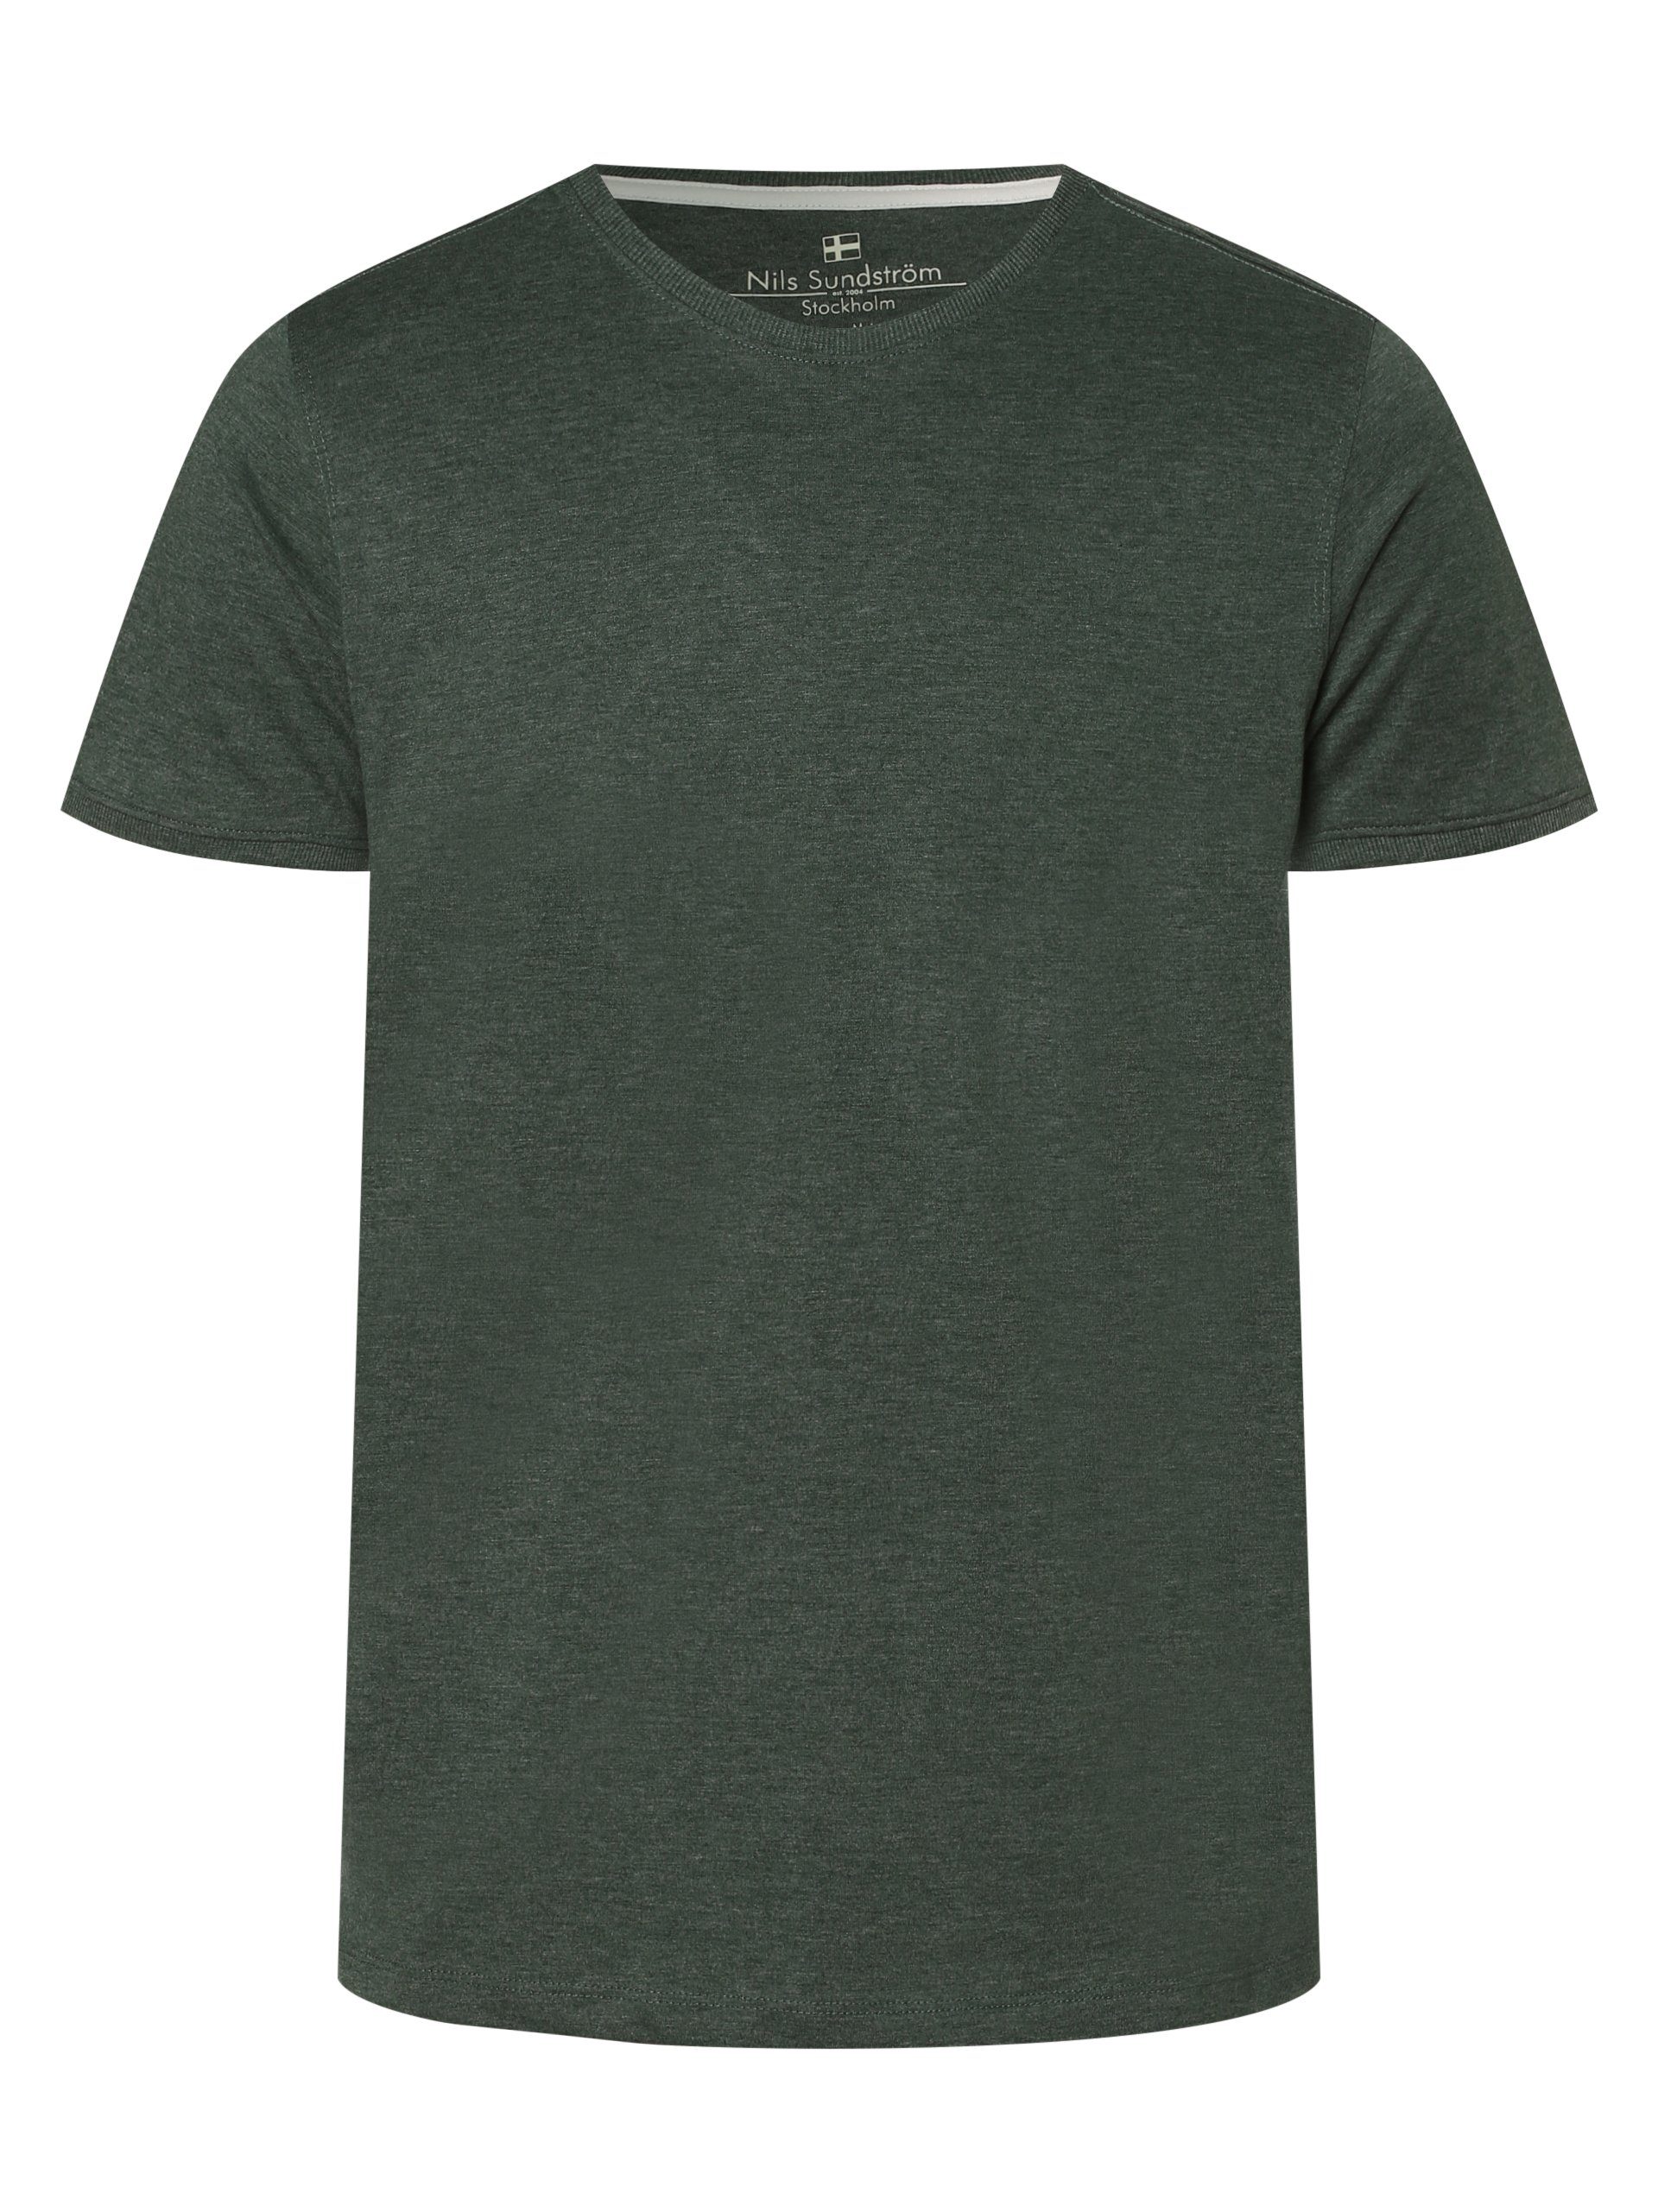 grün T-Shirt Sundström Nils